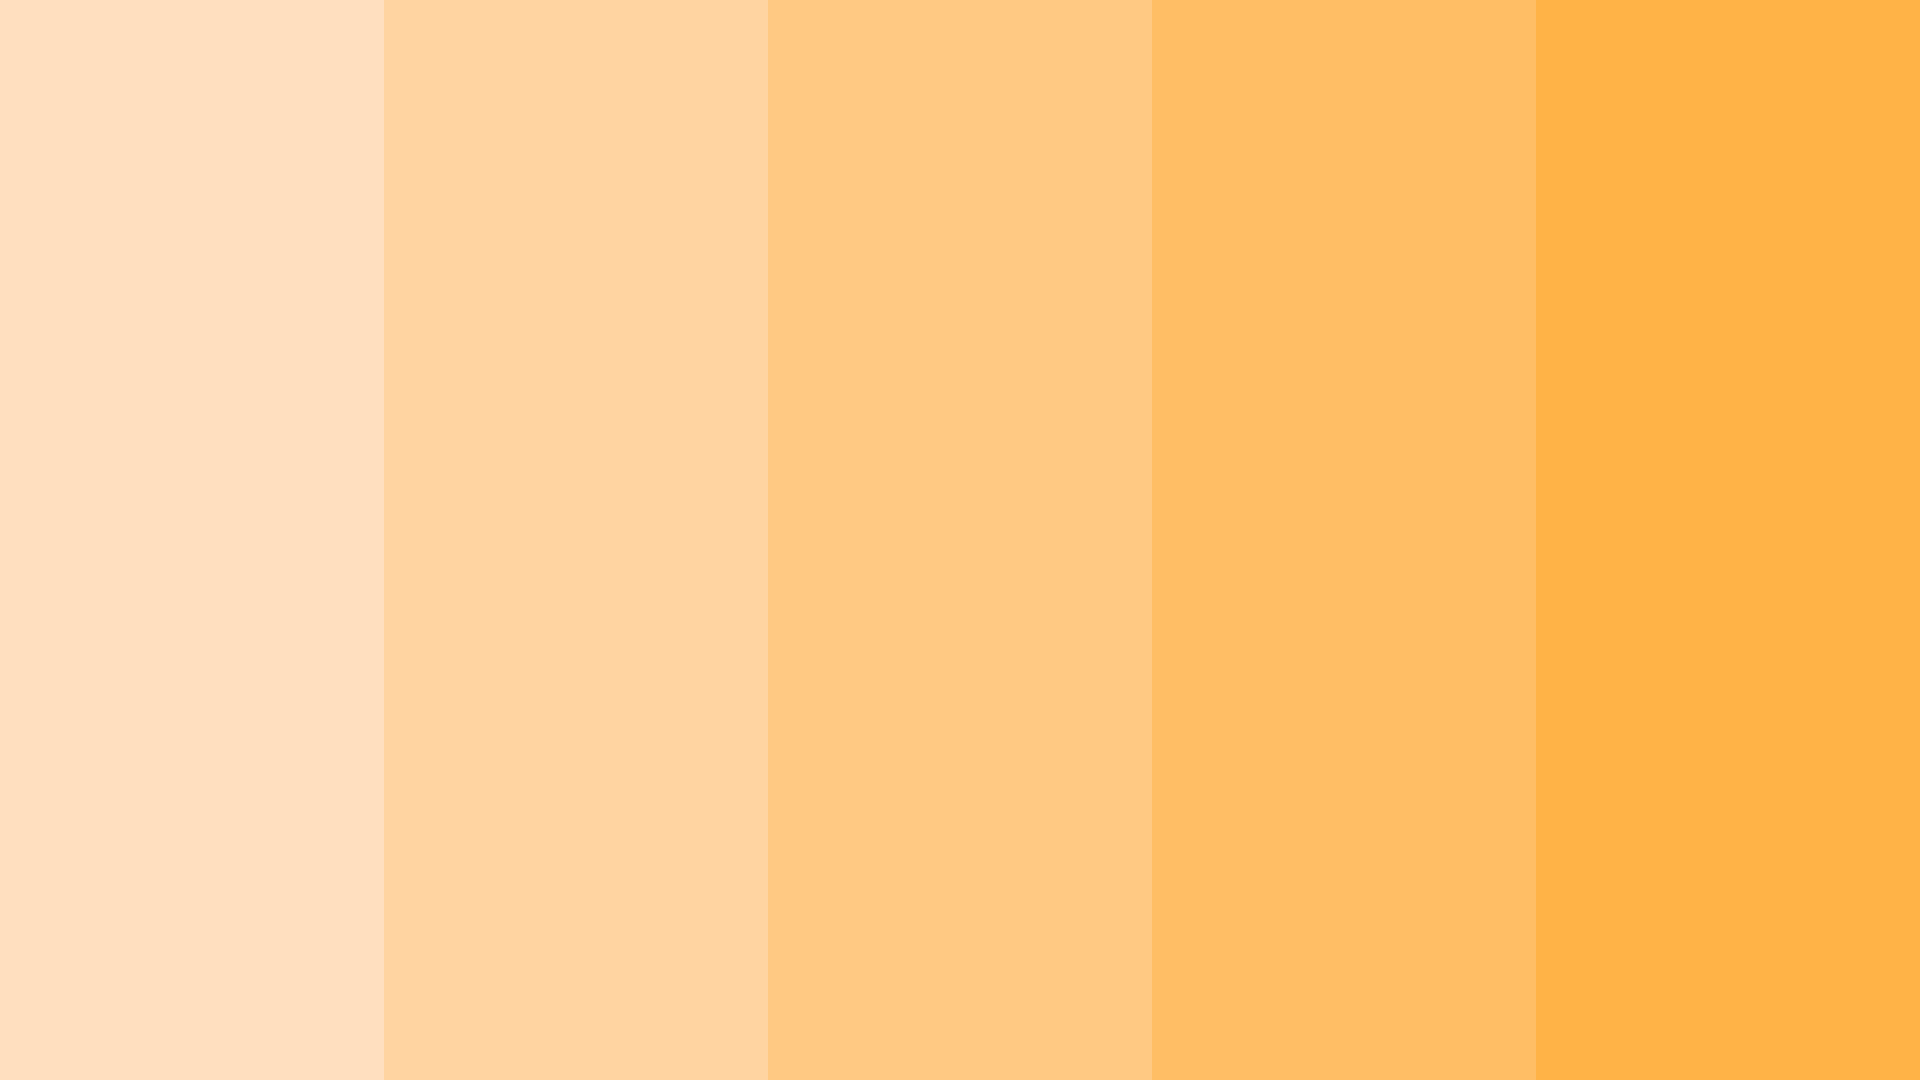 Pastel Orange Wallpapers